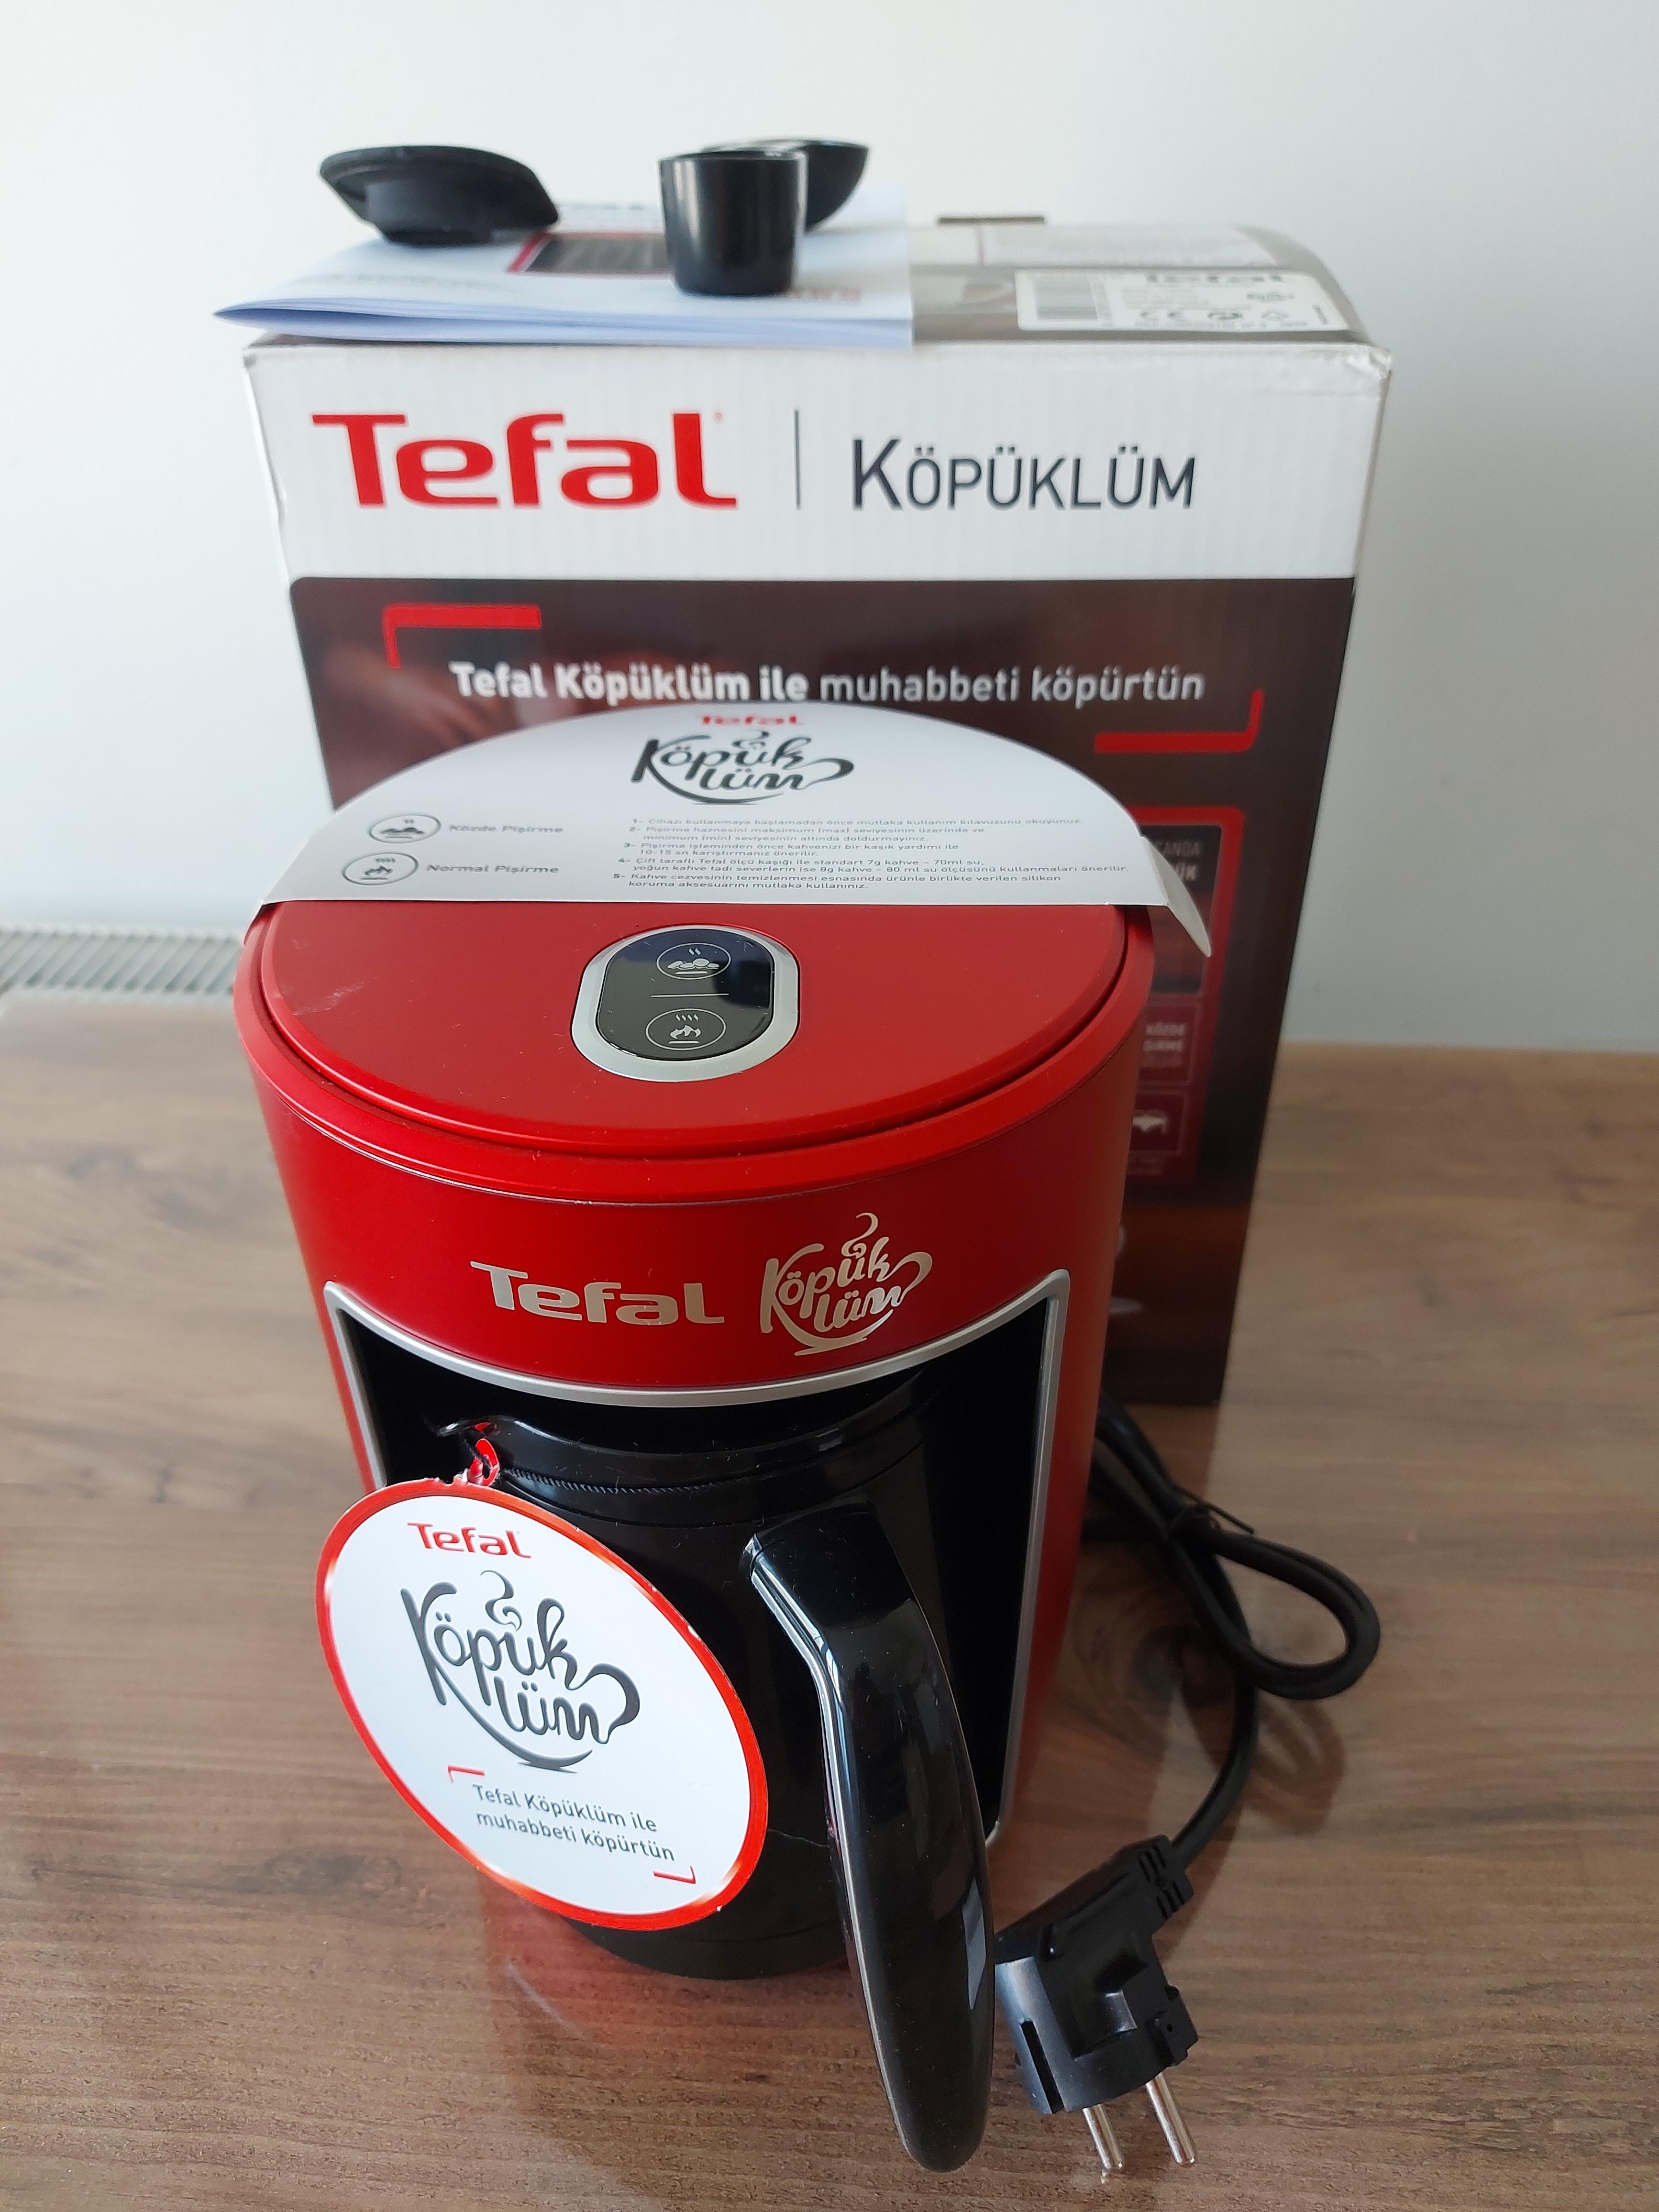 SATILIK TEFAL Köpüklüm Türk Kahve Makinesi | DonanımHaber Forum